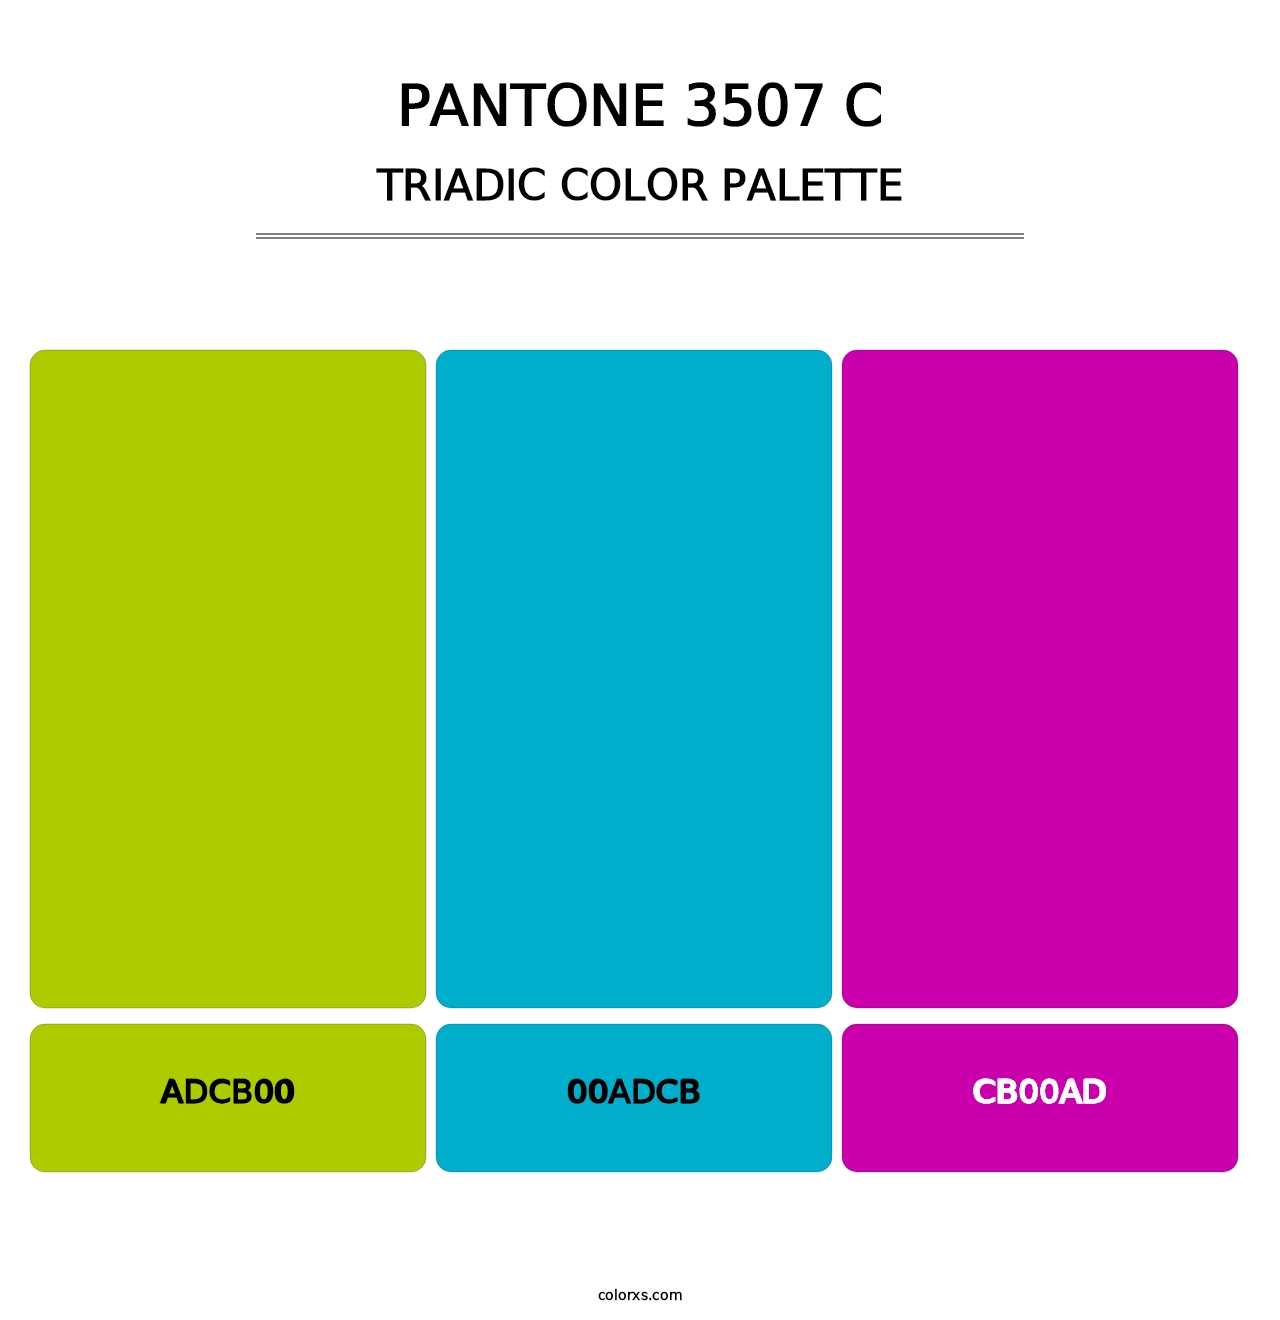 PANTONE 3507 C - Triadic Color Palette